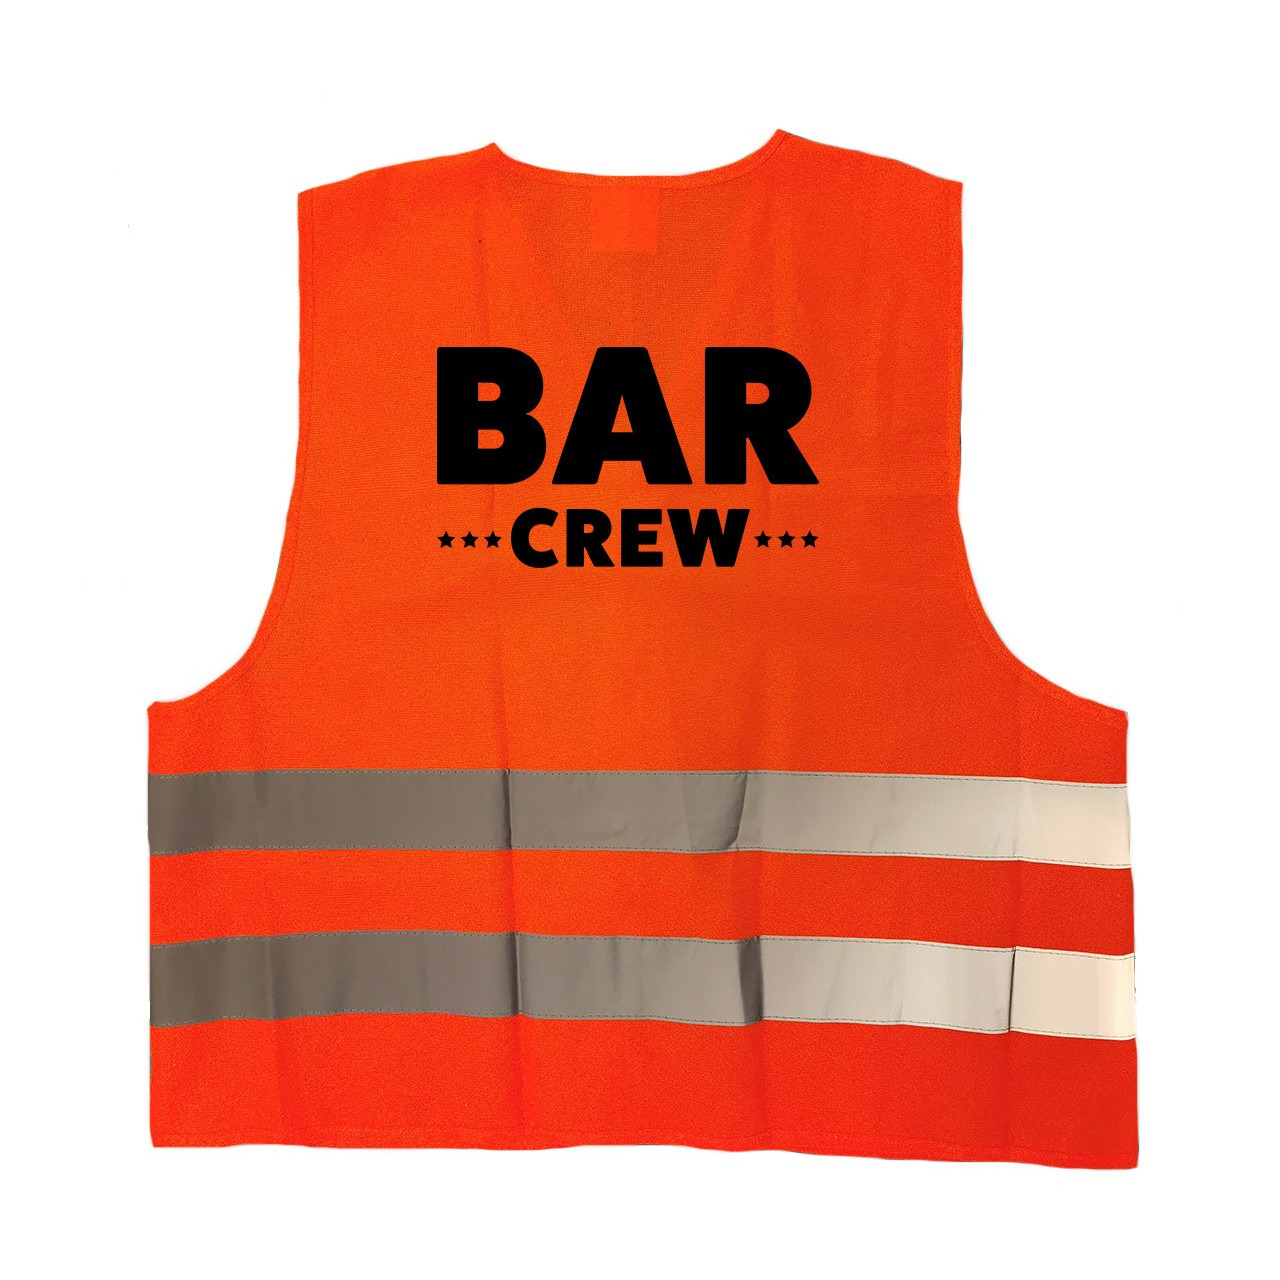 Bar crew / personeel vestje / hesje oranje met reflecterende strepen voor volwassenen